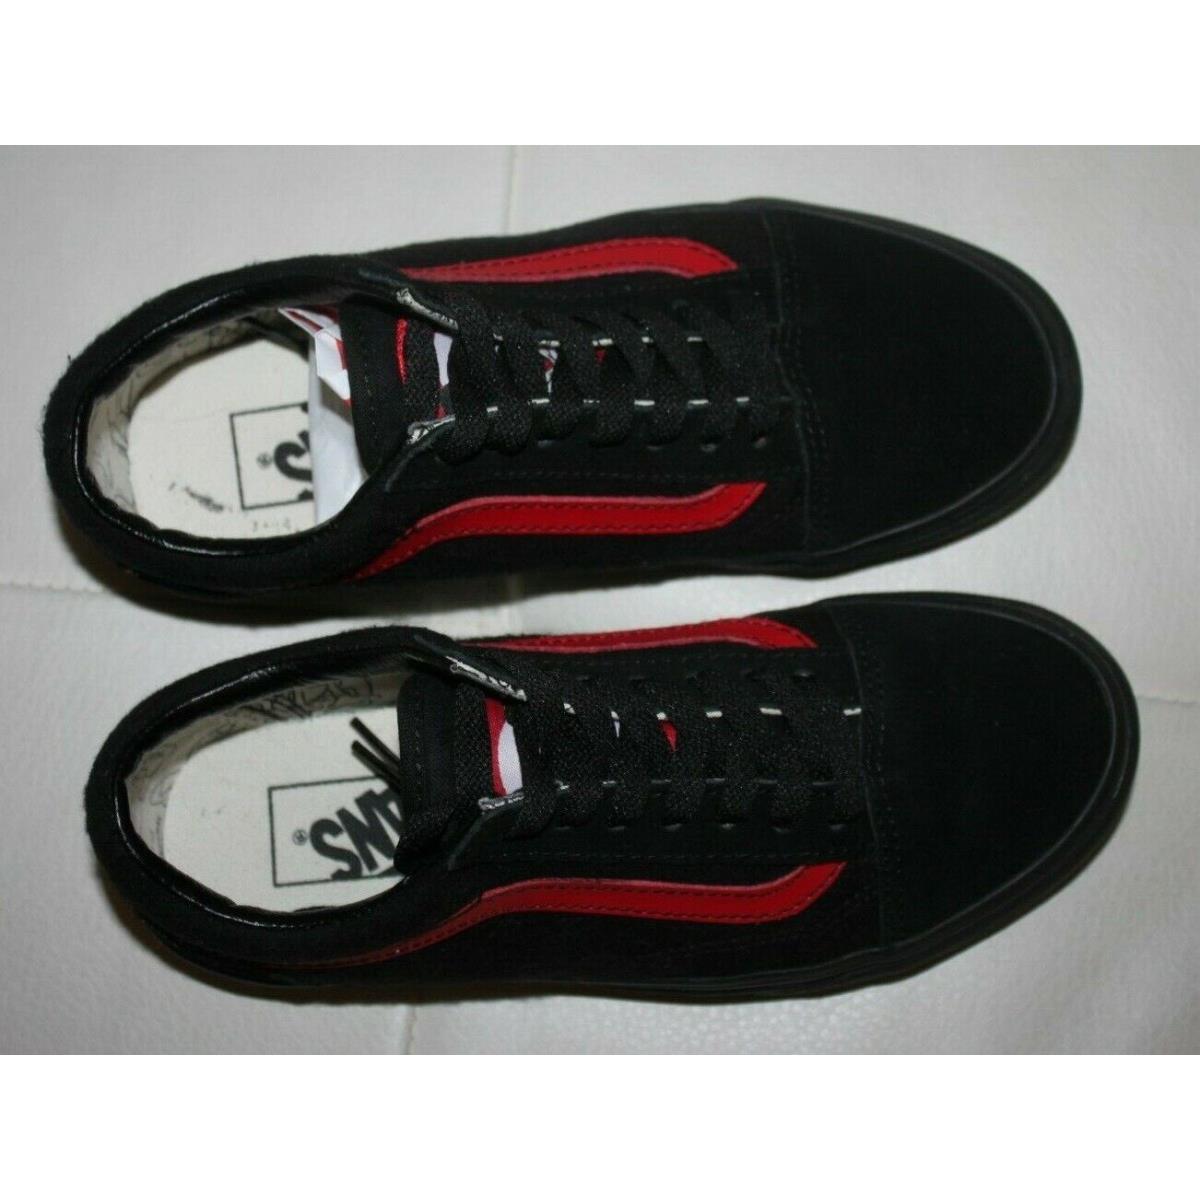 Vans shoes  - Black & Red, Manufacturer: Black/Red 3